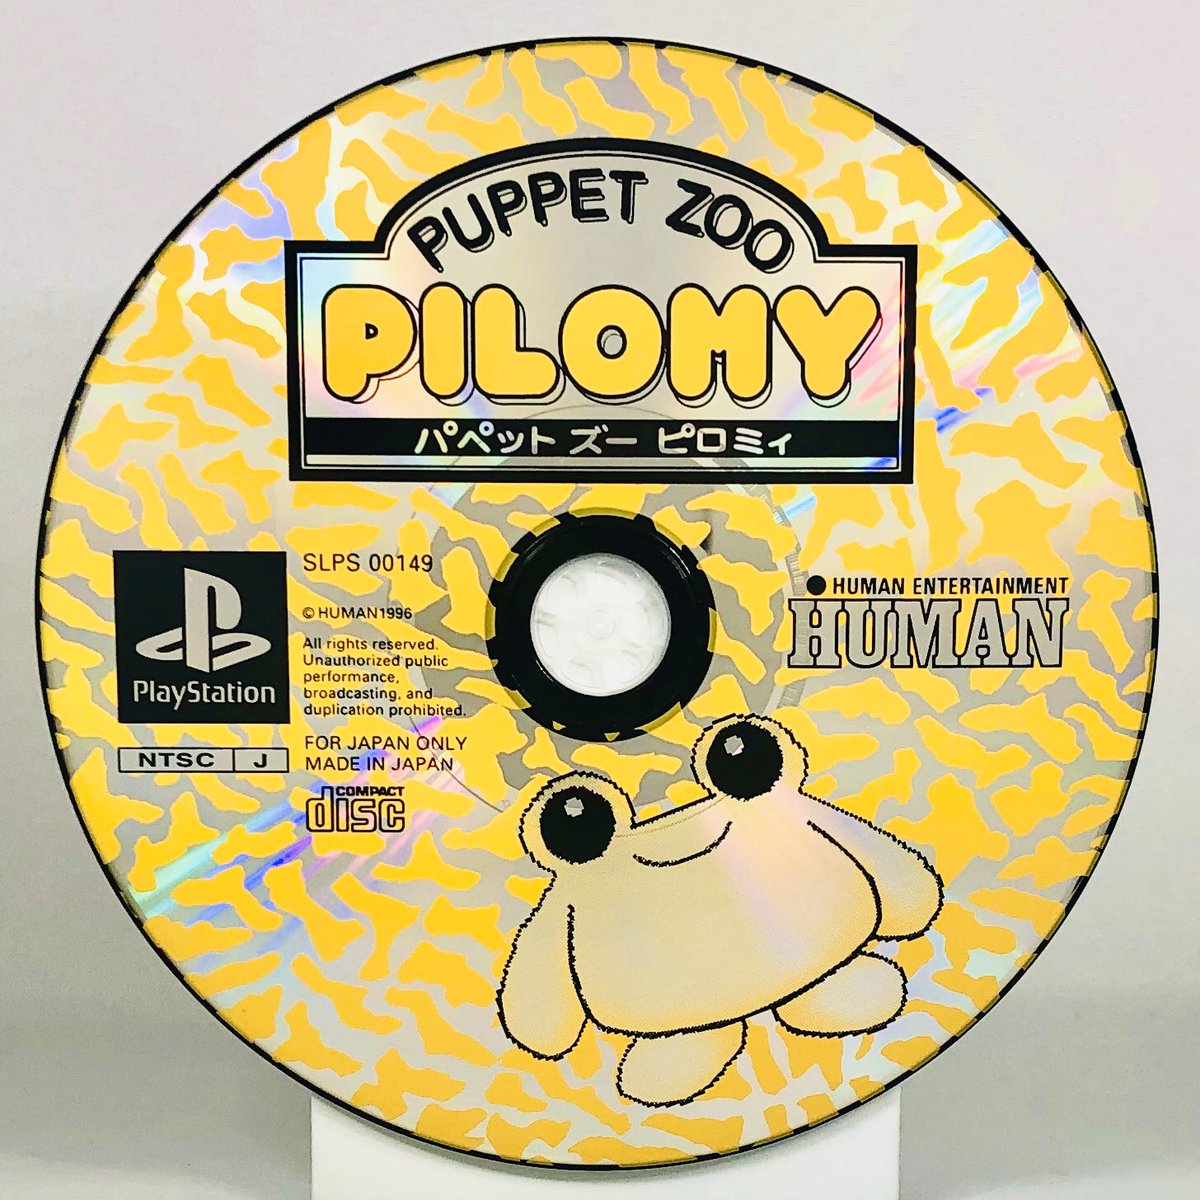 Puppet Zoo PilomyHumanPlayStation, 1996